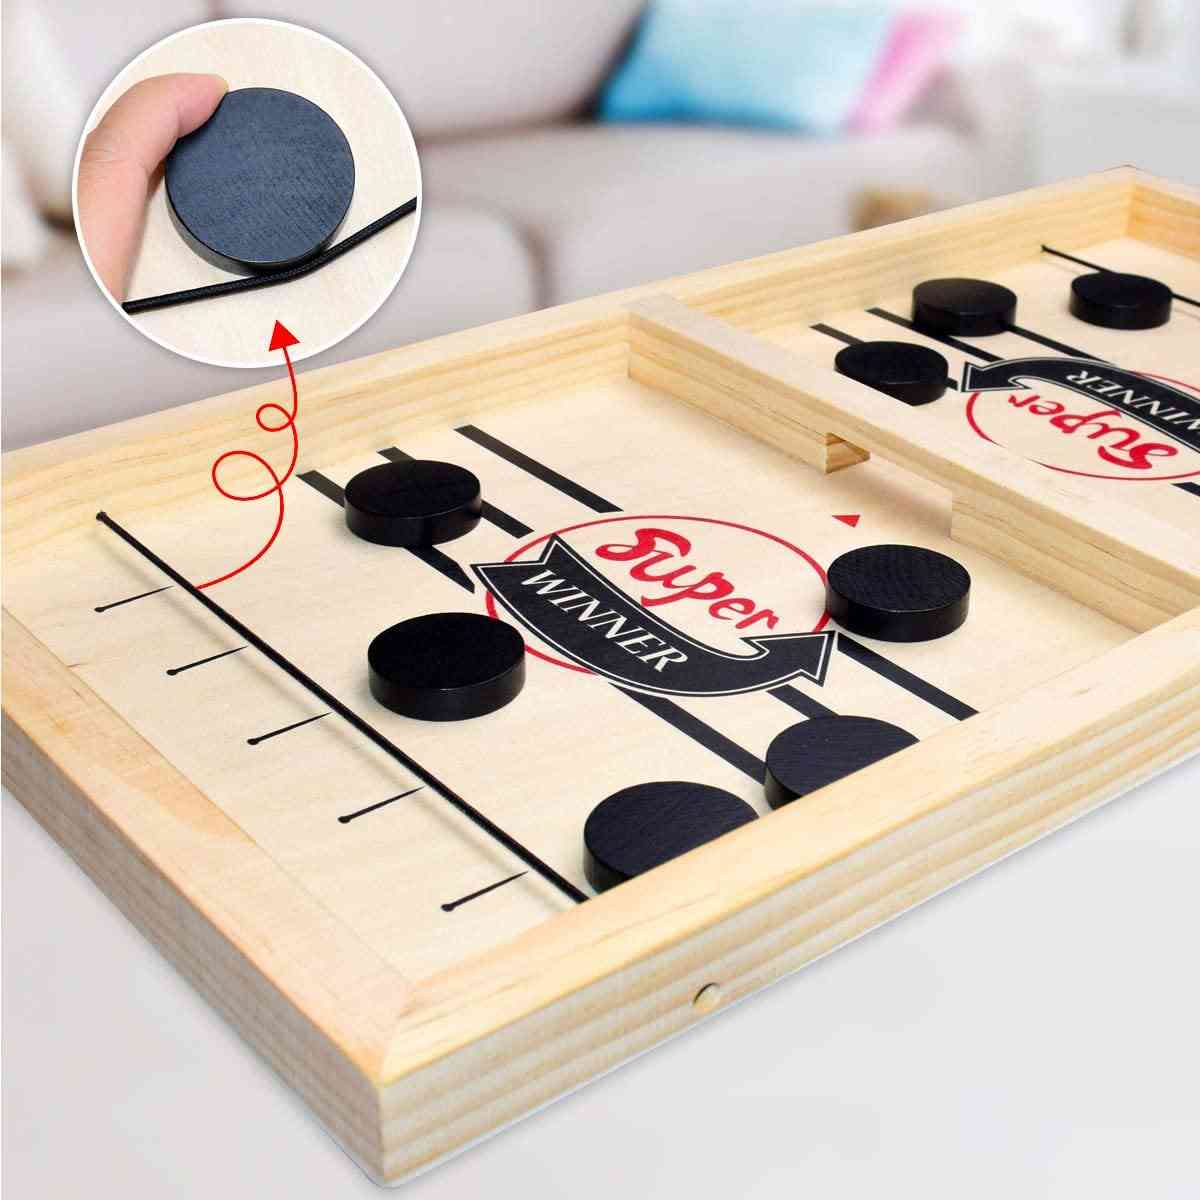 Asztali gyors jégkorong parittyás játék tempójú parittyás koronggyőztes szórakoztató játékok, buli felnőtt / gyermek családi házi társasjátékhoz